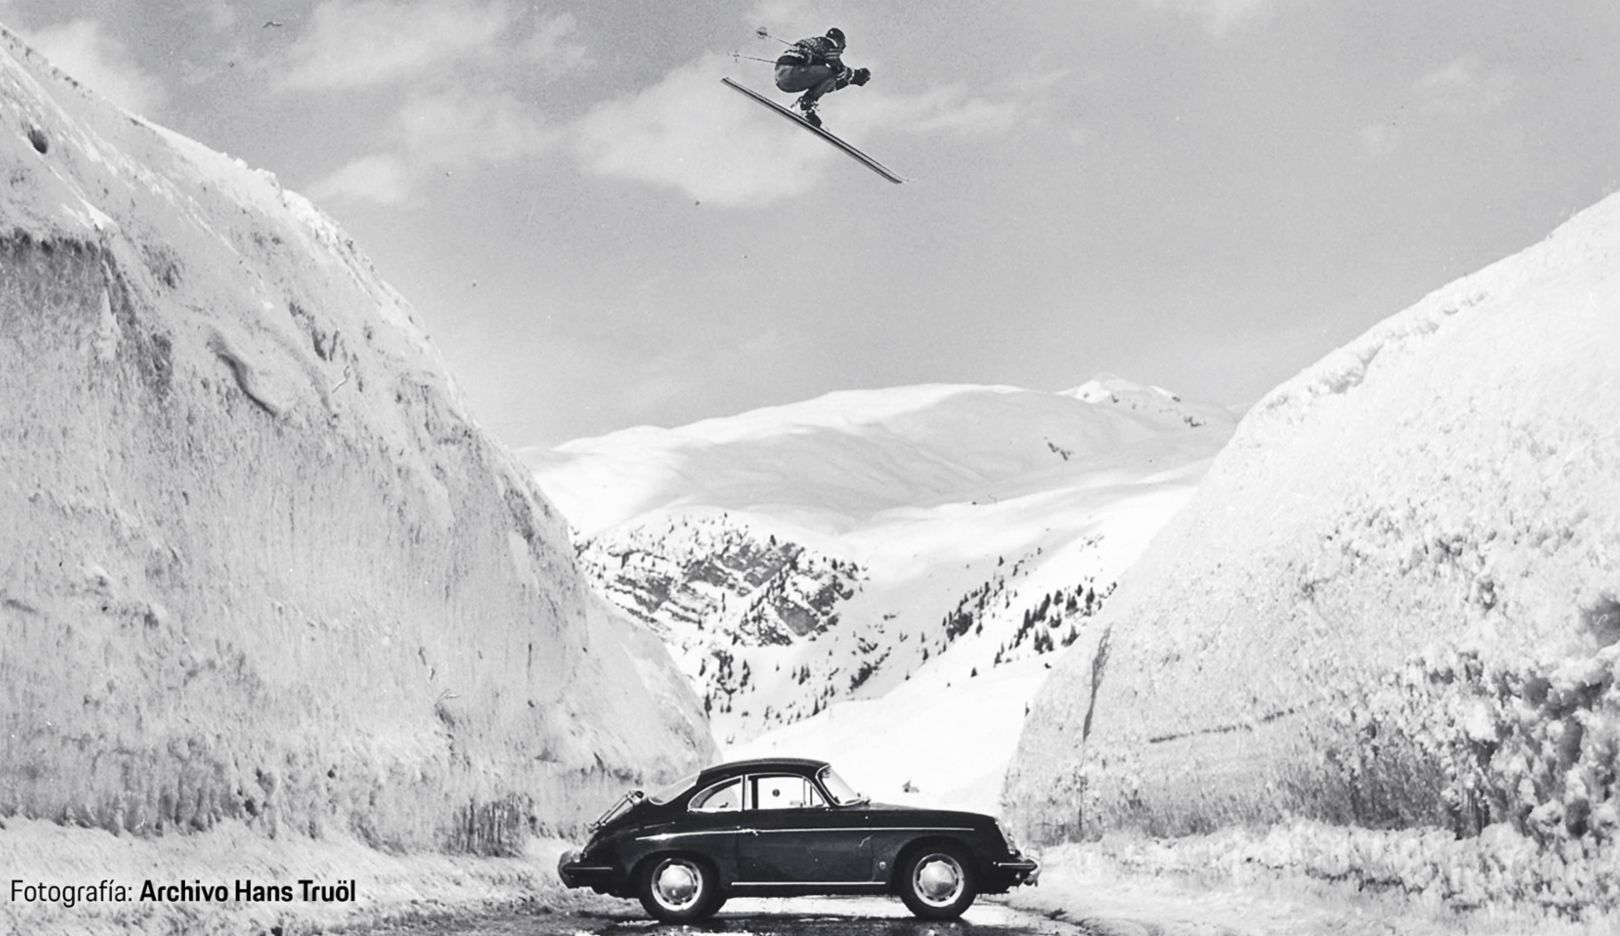 El salto de esquí sobre un Porsche que se convirtió en un icono y creó escuela